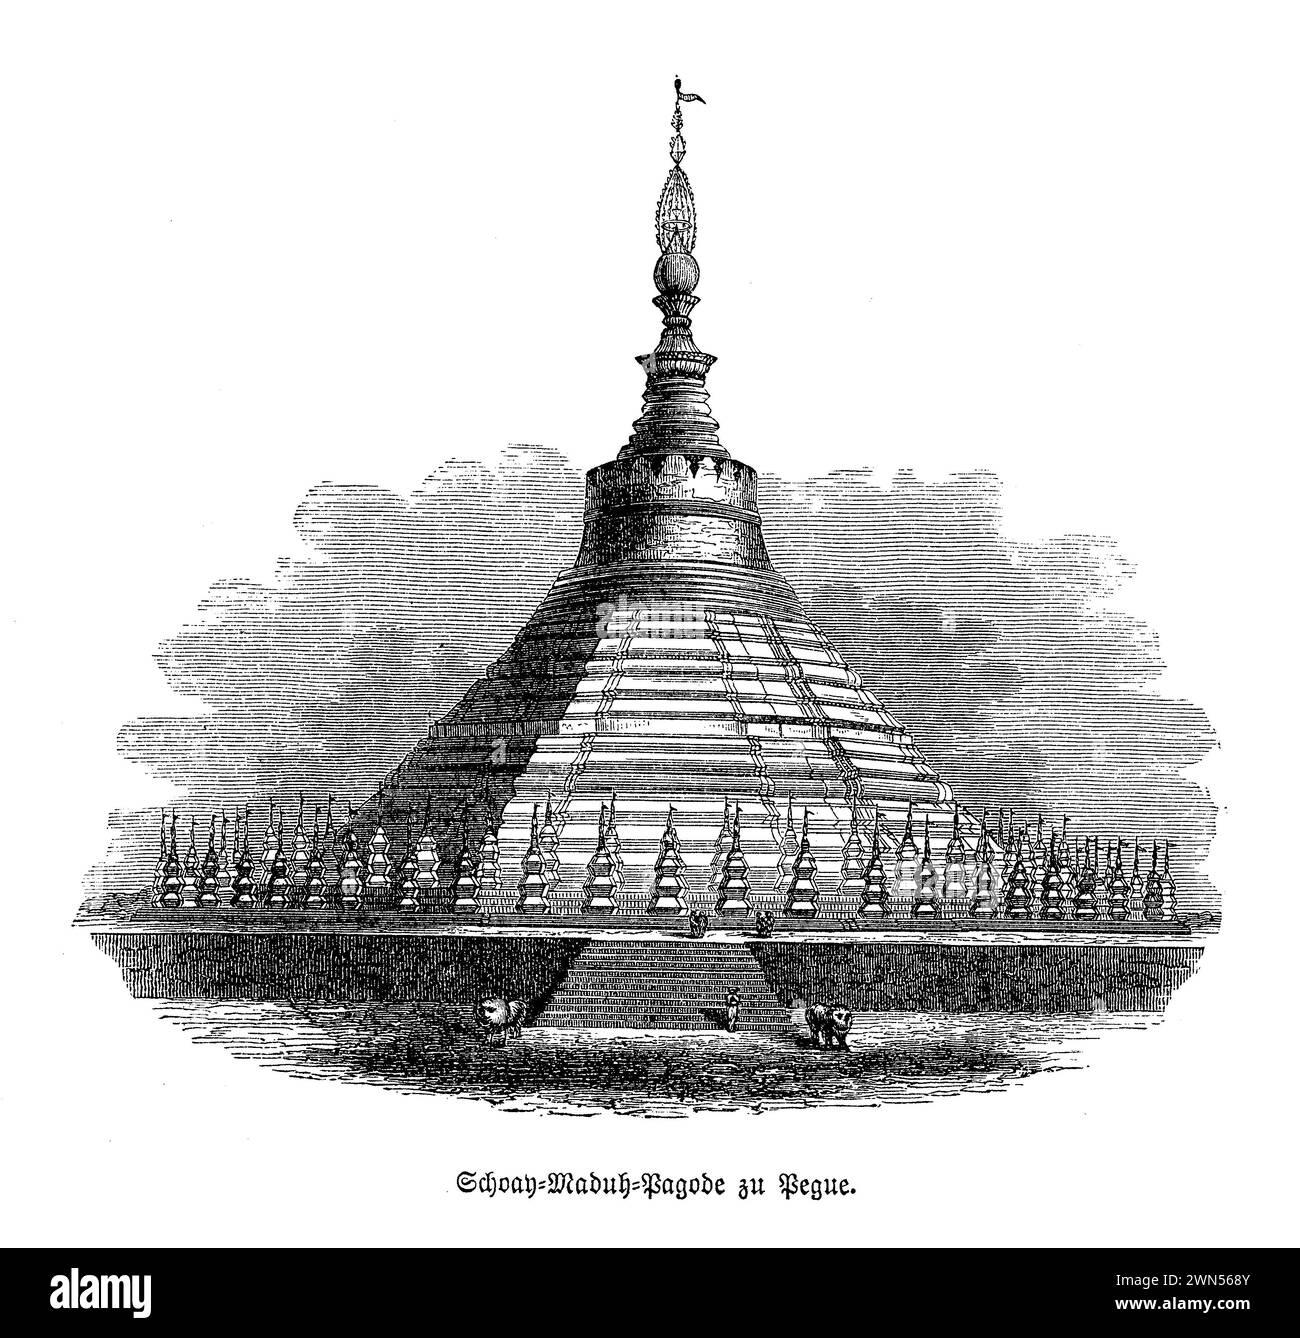 La pagode Shwemawdaw, connue sous le nom de « Temple du Dieu d'or », est la plus haute pagode du Myanmar, sa flèche atteignant le ciel, dorée et scintillante au soleil. Située dans la ville historique de Bago, cette structure majestueuse est visible à des kilomètres, symbolisant le cœur spirituel du peuple birman. Datant de plus de mille ans, il a été embelli et reconstruit par les rois successifs, chacun ajoutant à sa gloire. La pagode enchâsse des mèches de cheveux de Bouddha, ce qui en fait un lieu de pèlerinage important pour les bouddhistes à la recherche du mérite et de l'accomplissement spirituel. Le complexe est orné de plus petits stupas, Banque D'Images